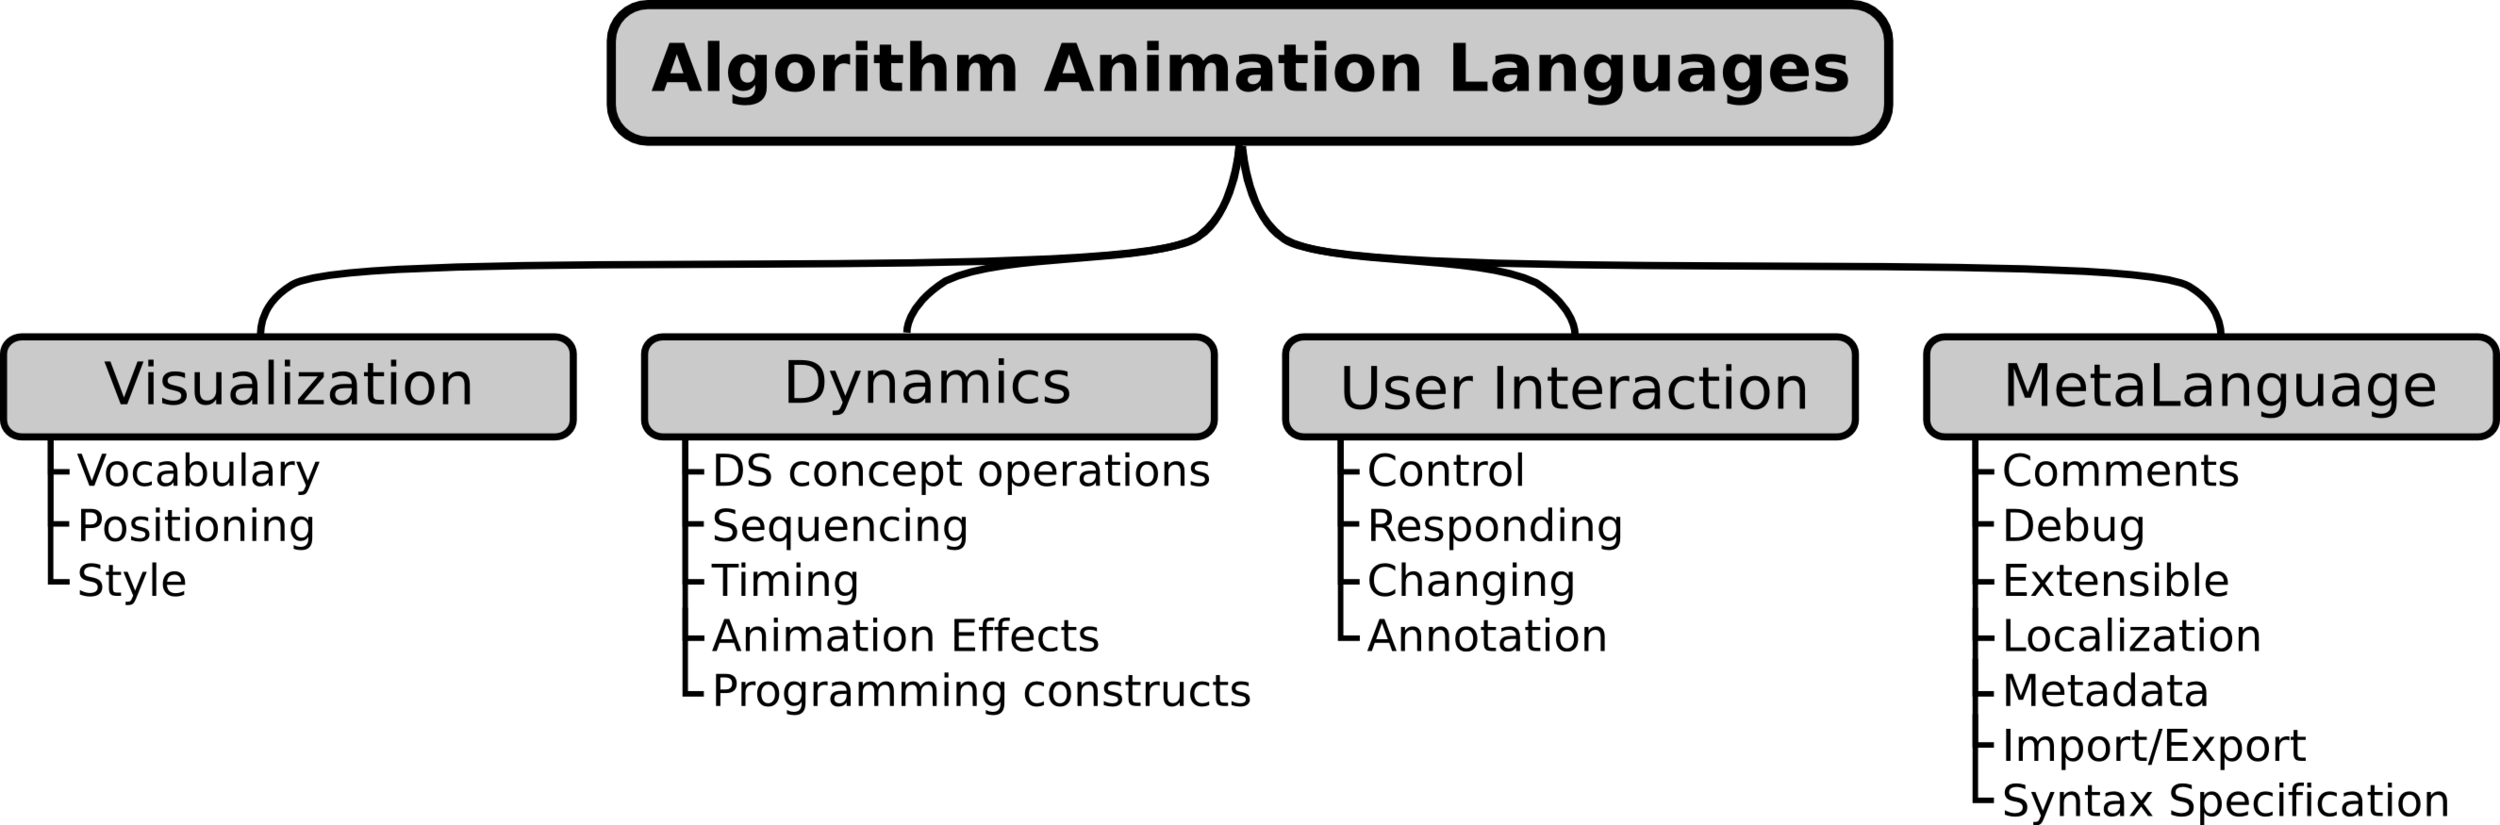 Taxonomy of Algorithm Animation Languages